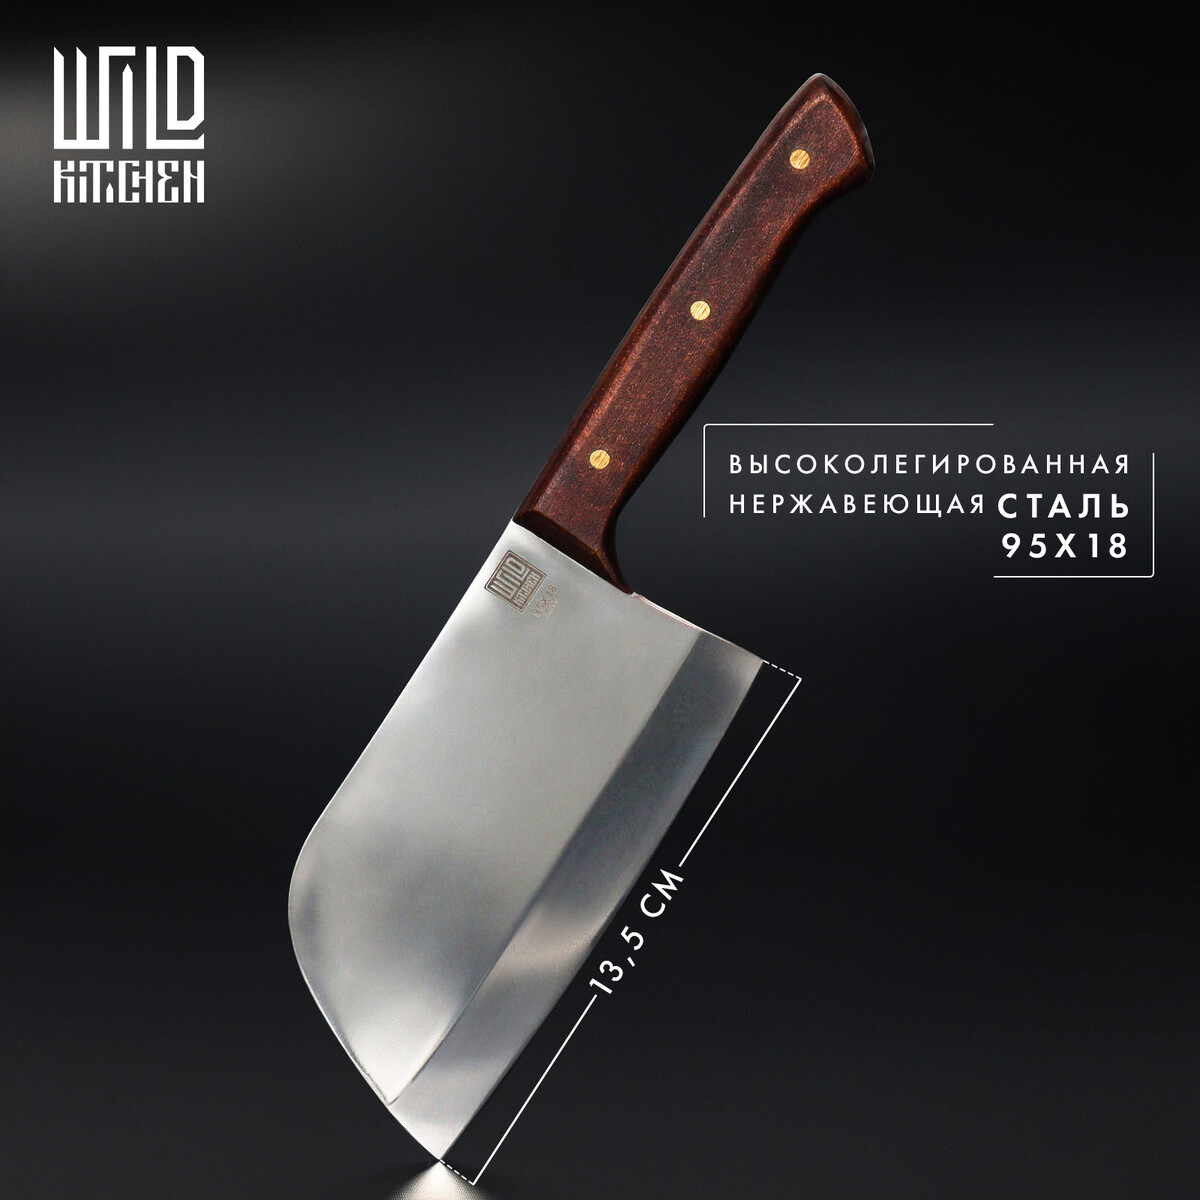 Нож - топорик малый wild kitchen, сталь 95×18, лезвие 13,5 см нож пчак кухонный wild kitchen сталь 95×18 лезвие 16 5 см